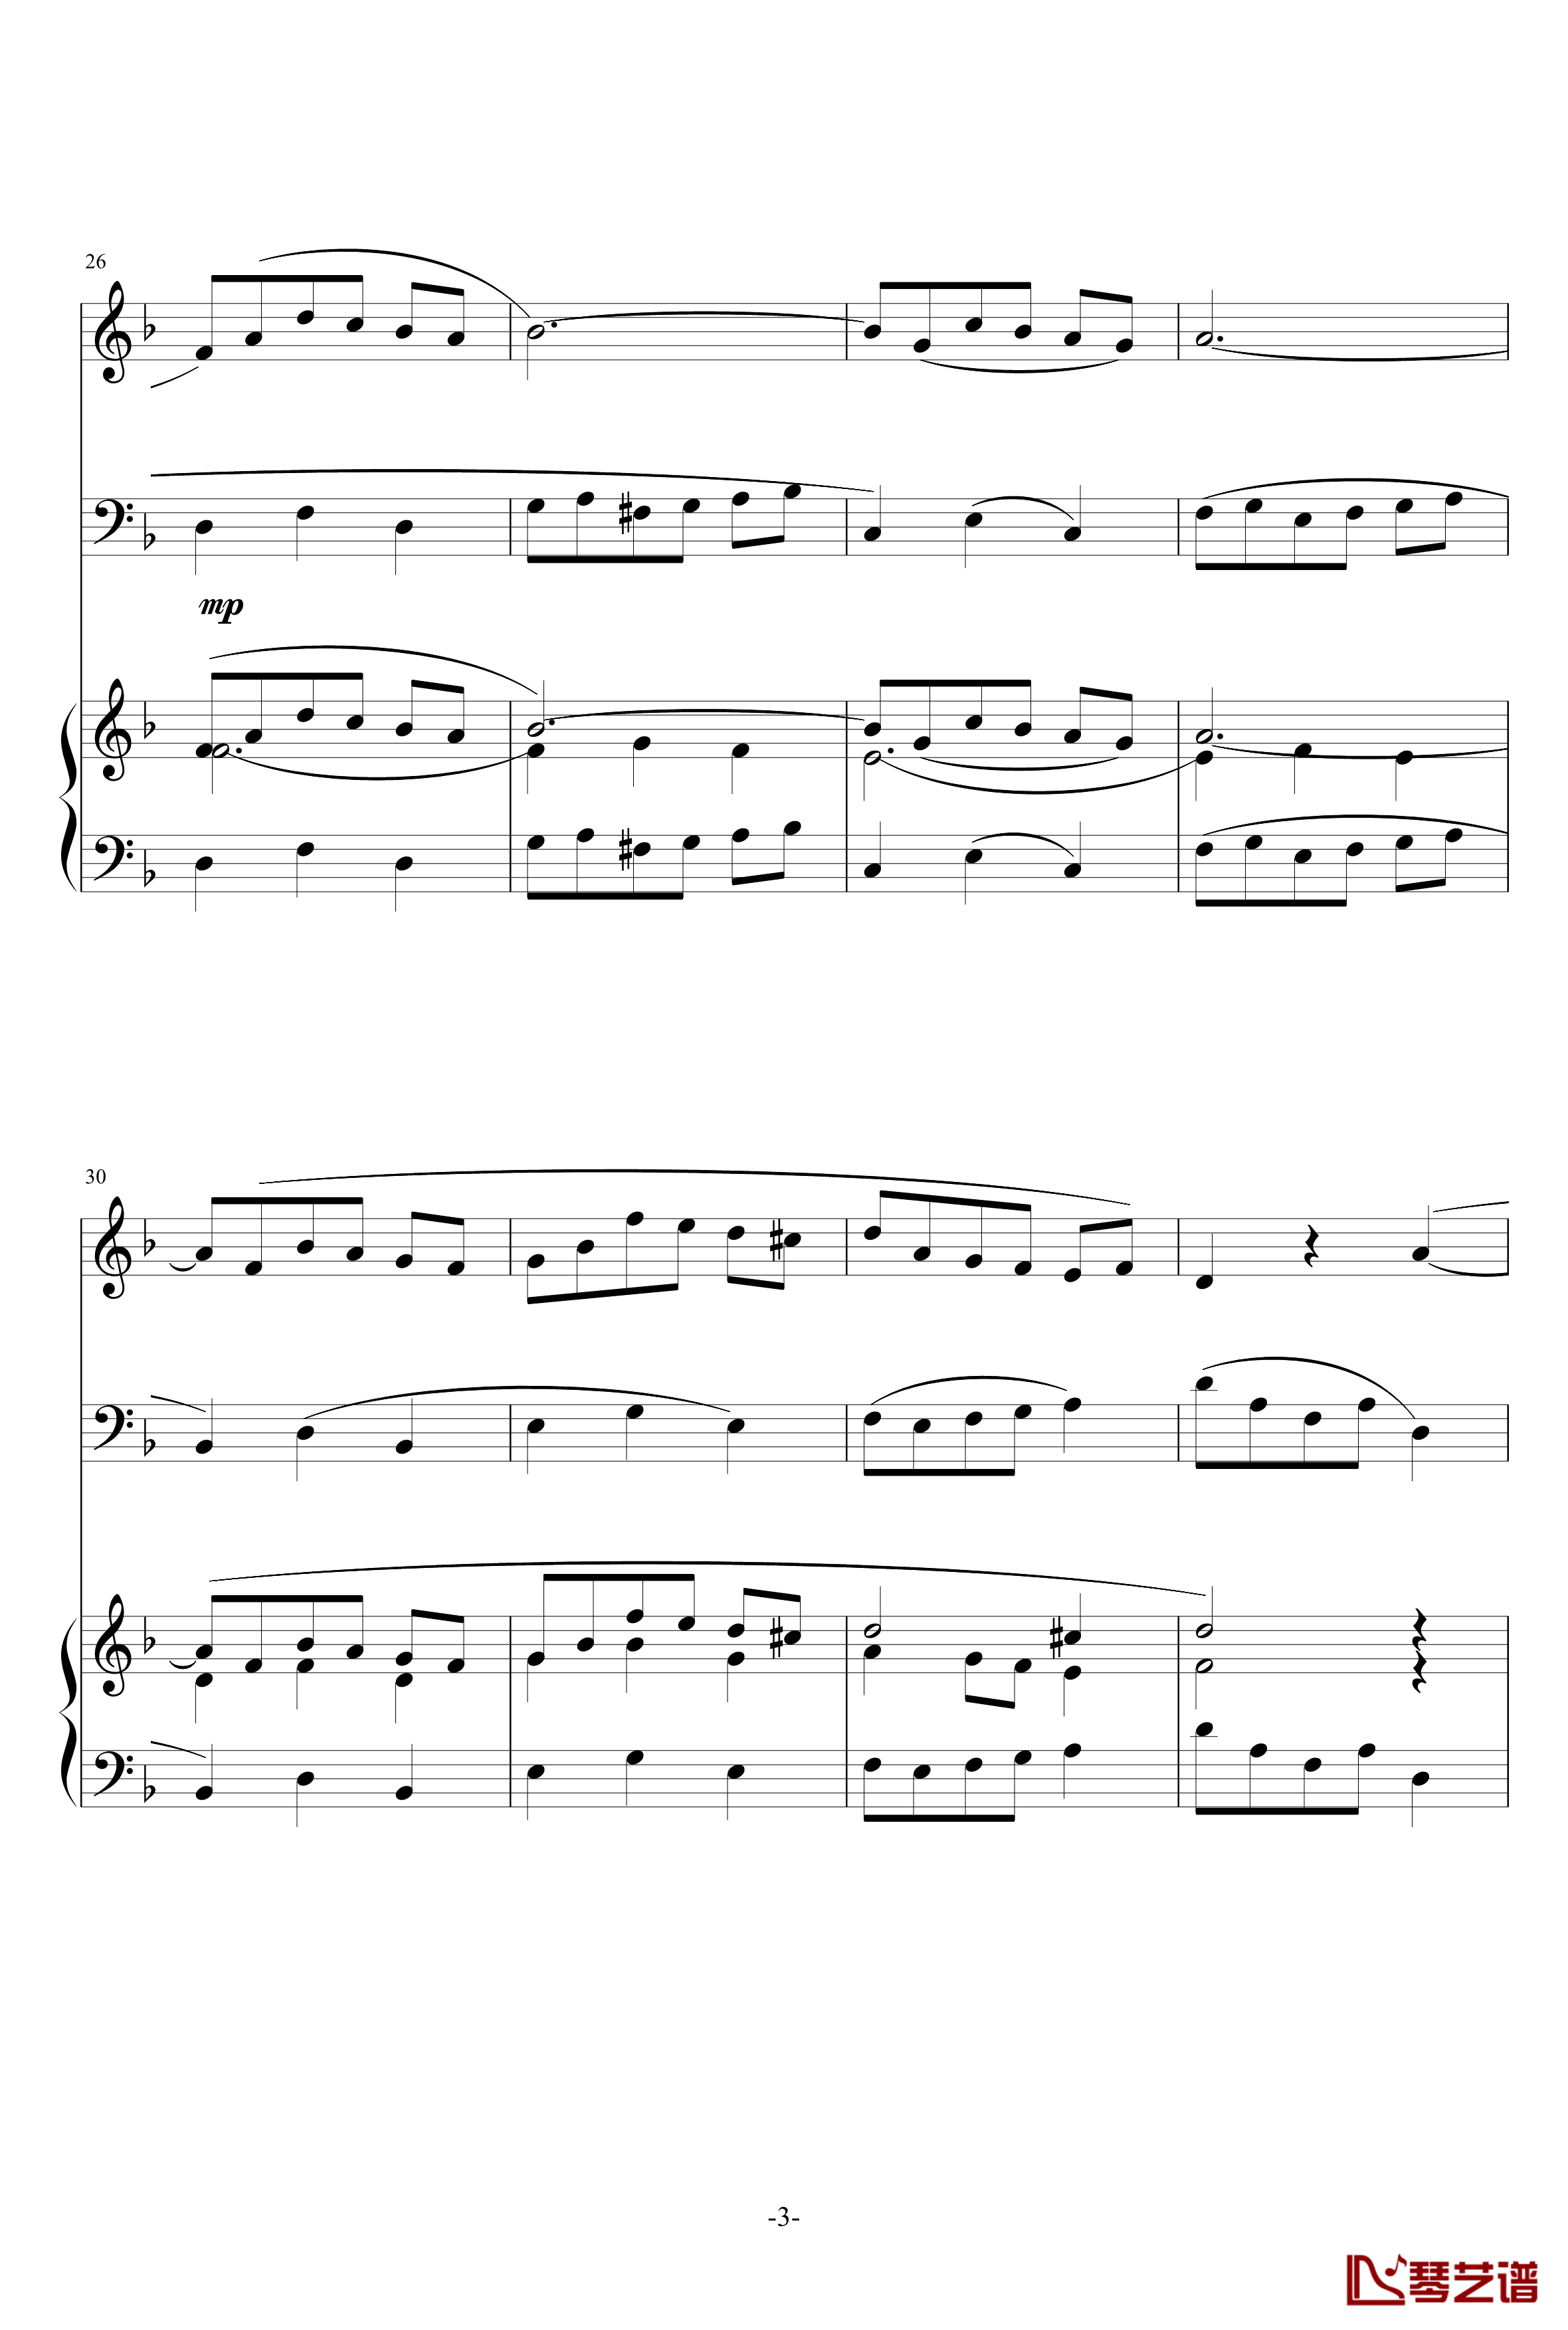 巴洛克风格小提琴协奏曲第一乐章钢琴谱-巴洛克3